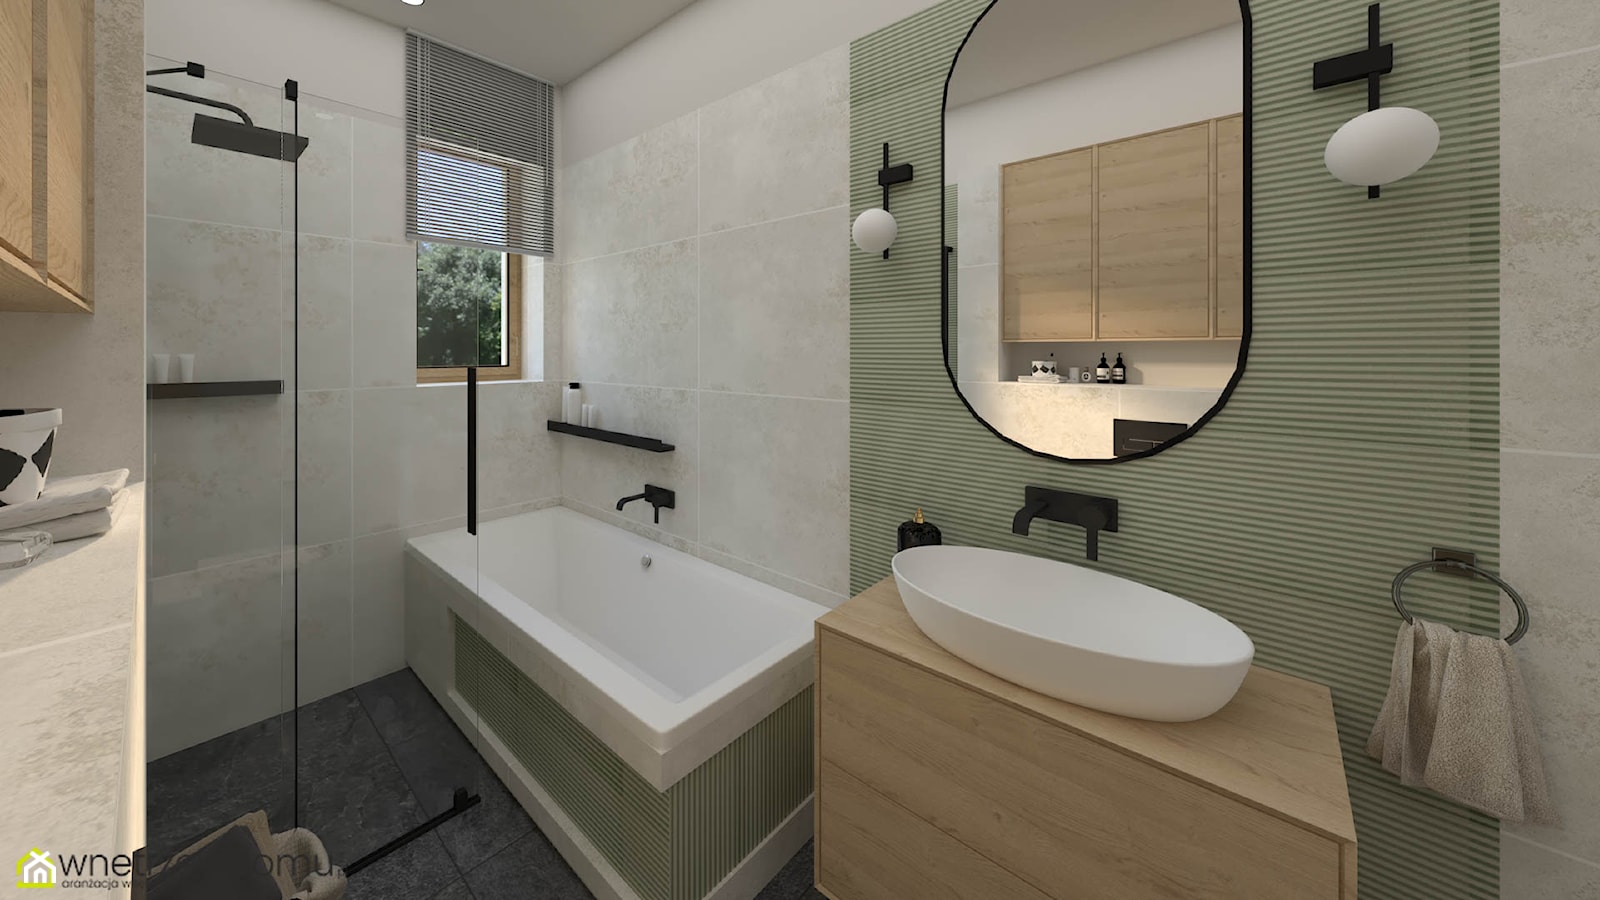 Jasna łazienka z zielonymi płytkami - zdjęcie od wnetrzewdomu - Homebook